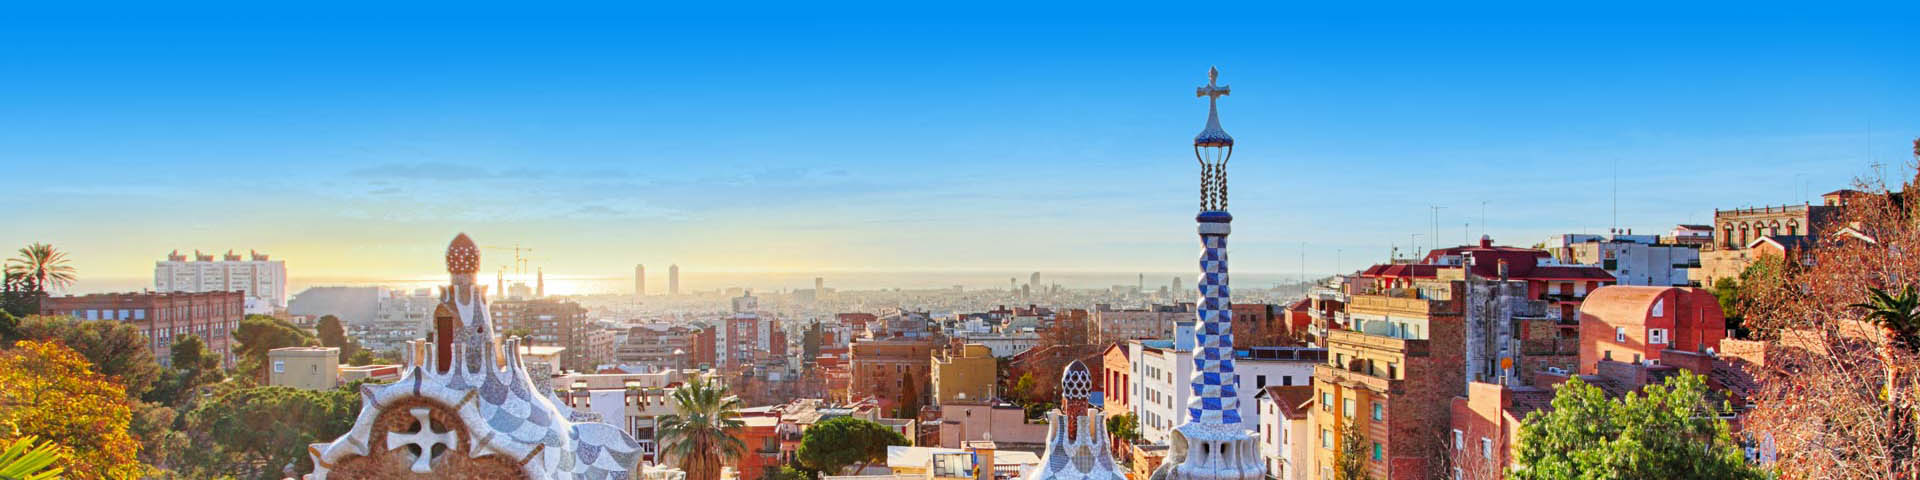 Uitzicht op de stad Barcelona met haar mooie bouwwerken